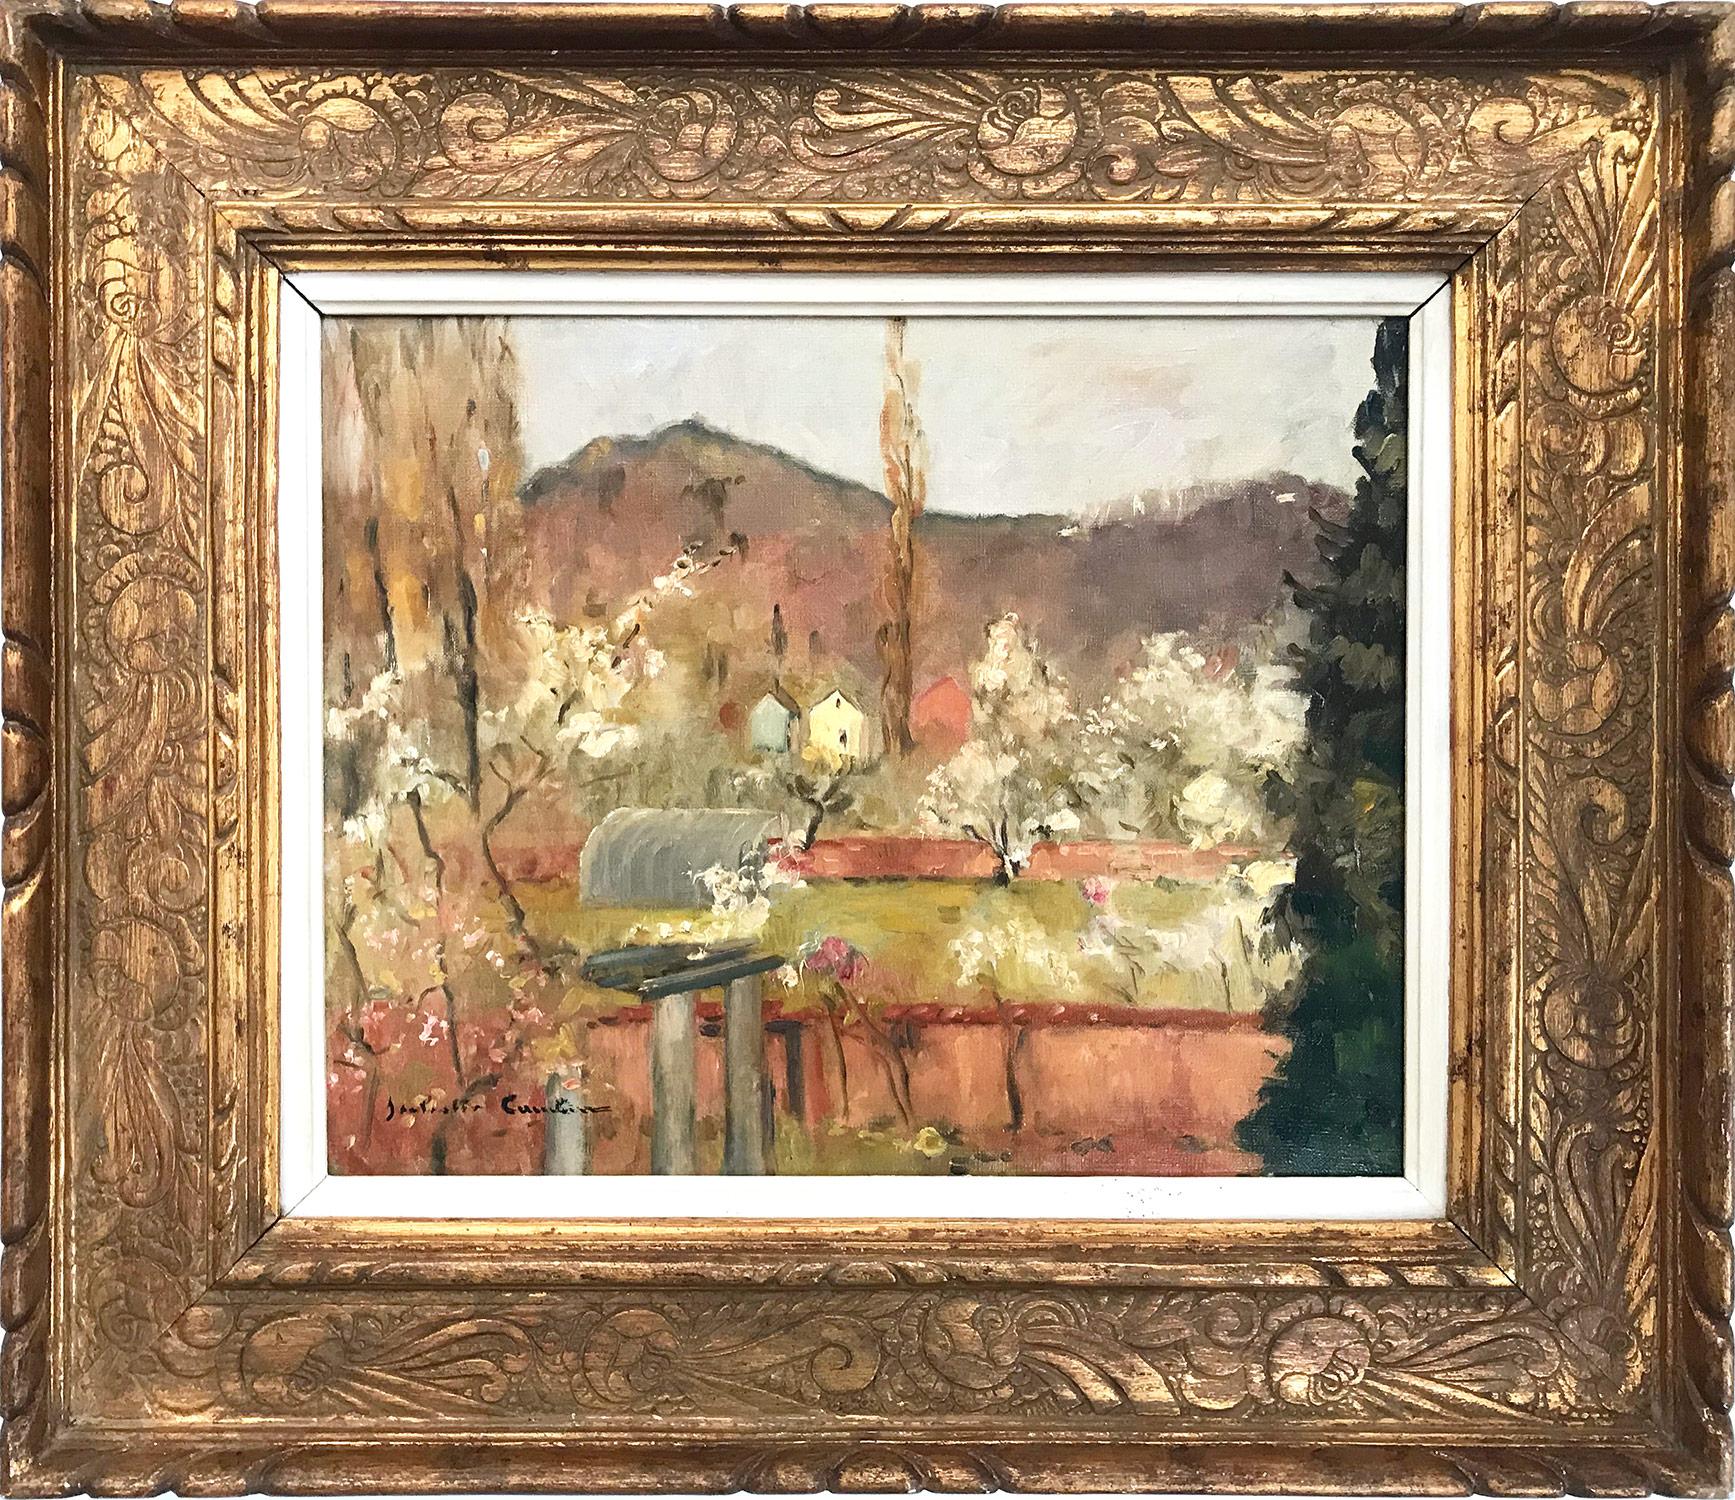 Landscape Painting Jan Cumpelik - Peinture à l'huile sur toile « Paysage au printemps » - Paysage impressionniste